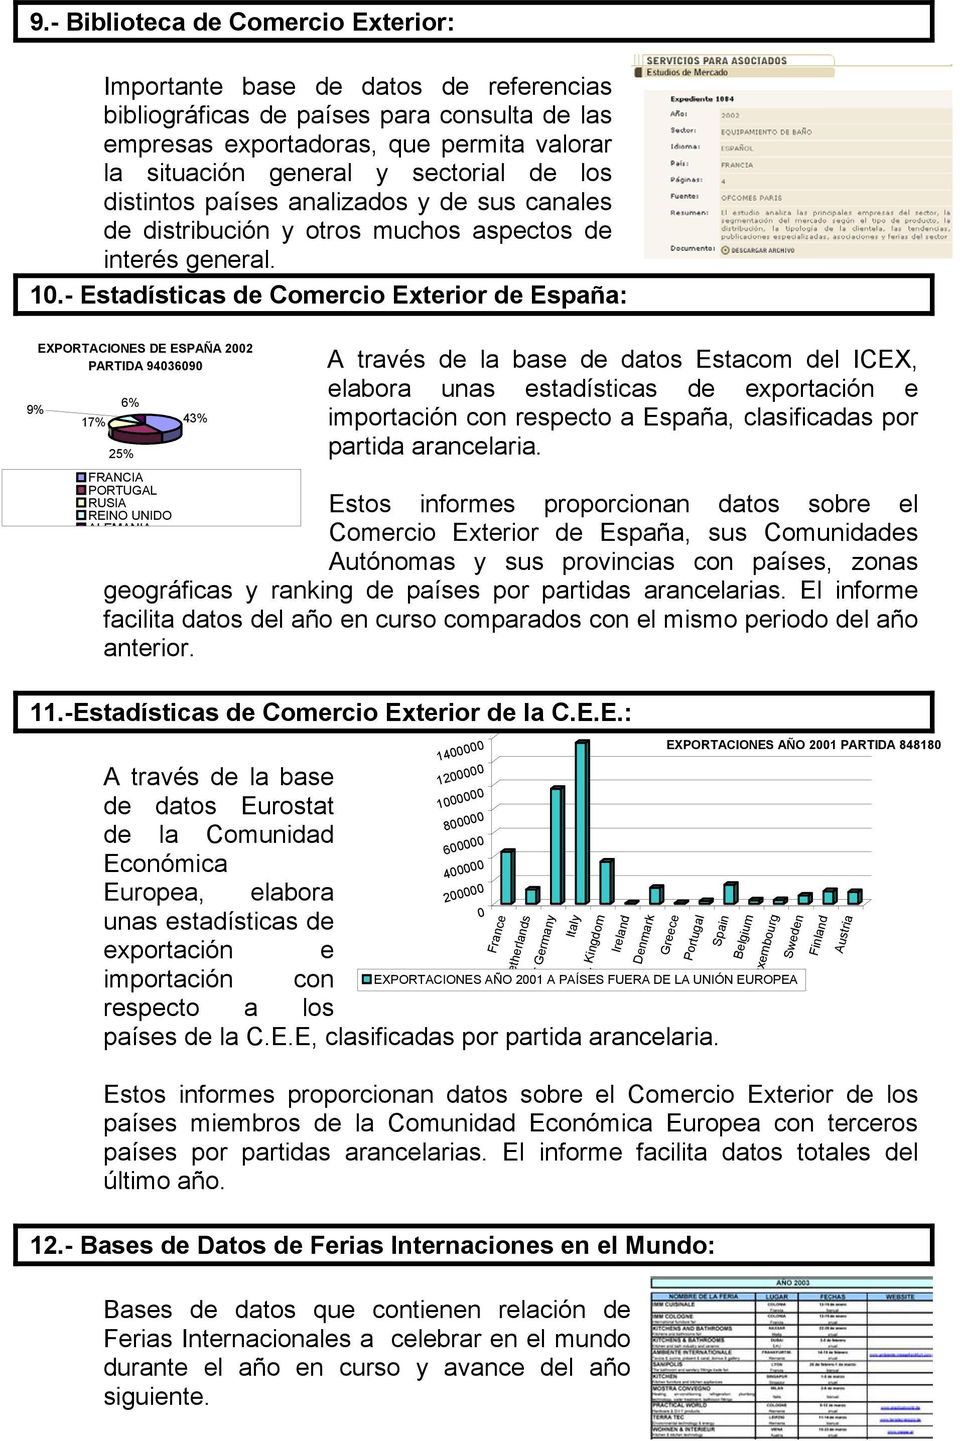 - Estadísticas de Comercio Exterior de España: EXPORTACIONES DE ESPAÑA 2002 PARTIDA 94036090 9% 17% 6% 25% FRANCIA PORTUGAL RUSIA REINO UNIDO ALEMANIA 43% A través de la base de datos Estacom del